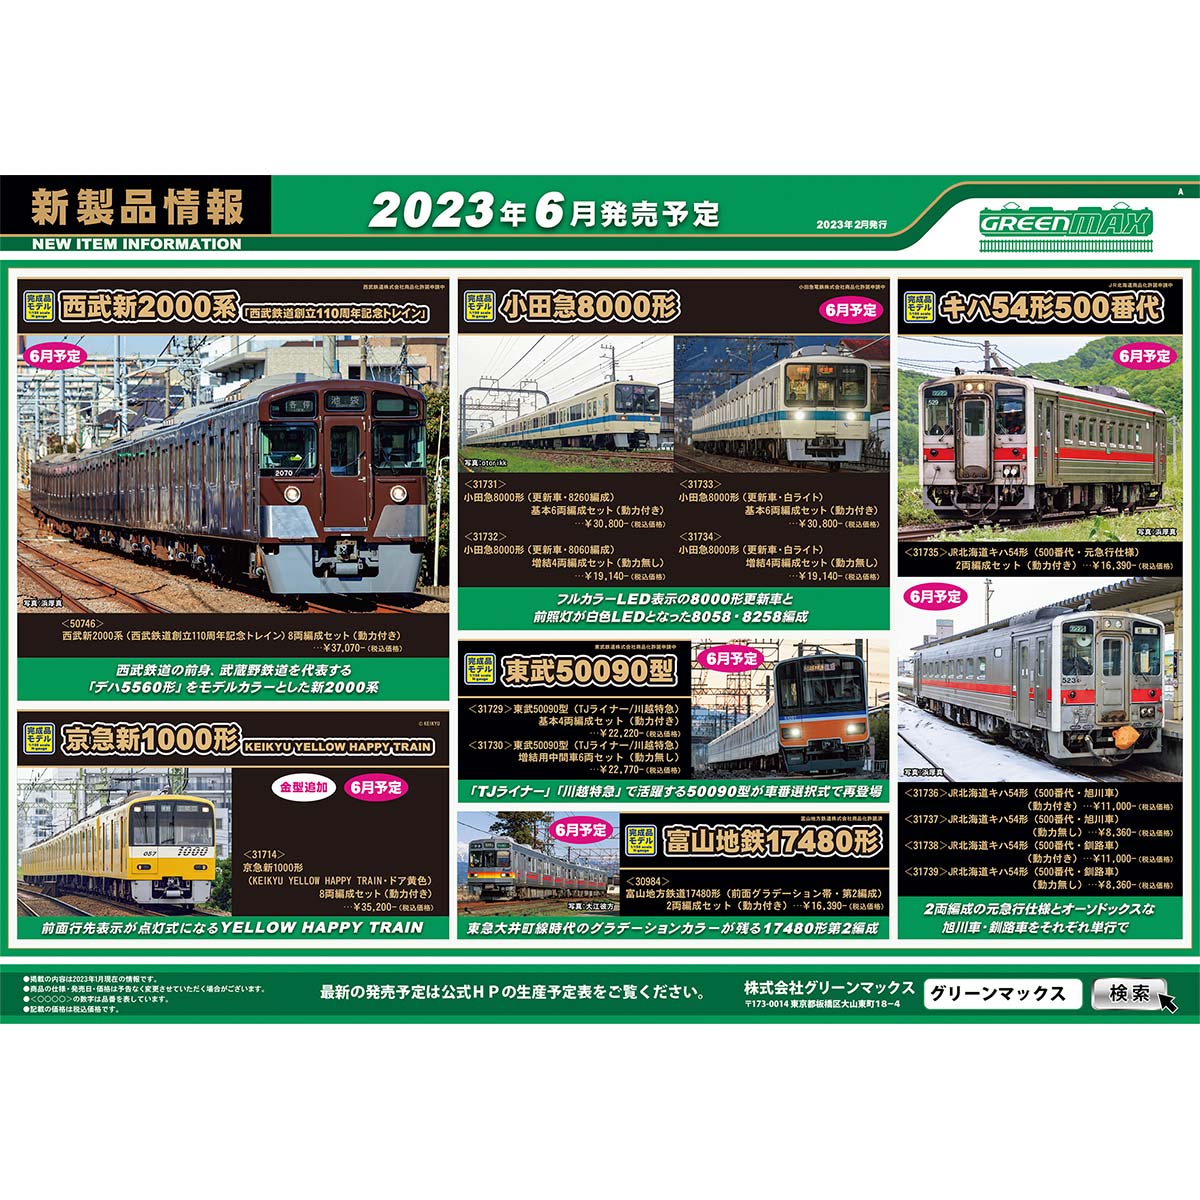 2023年2月20日発行A｜新製品情報ポスター｜Nゲージ鉄道模型のグリーンマックス